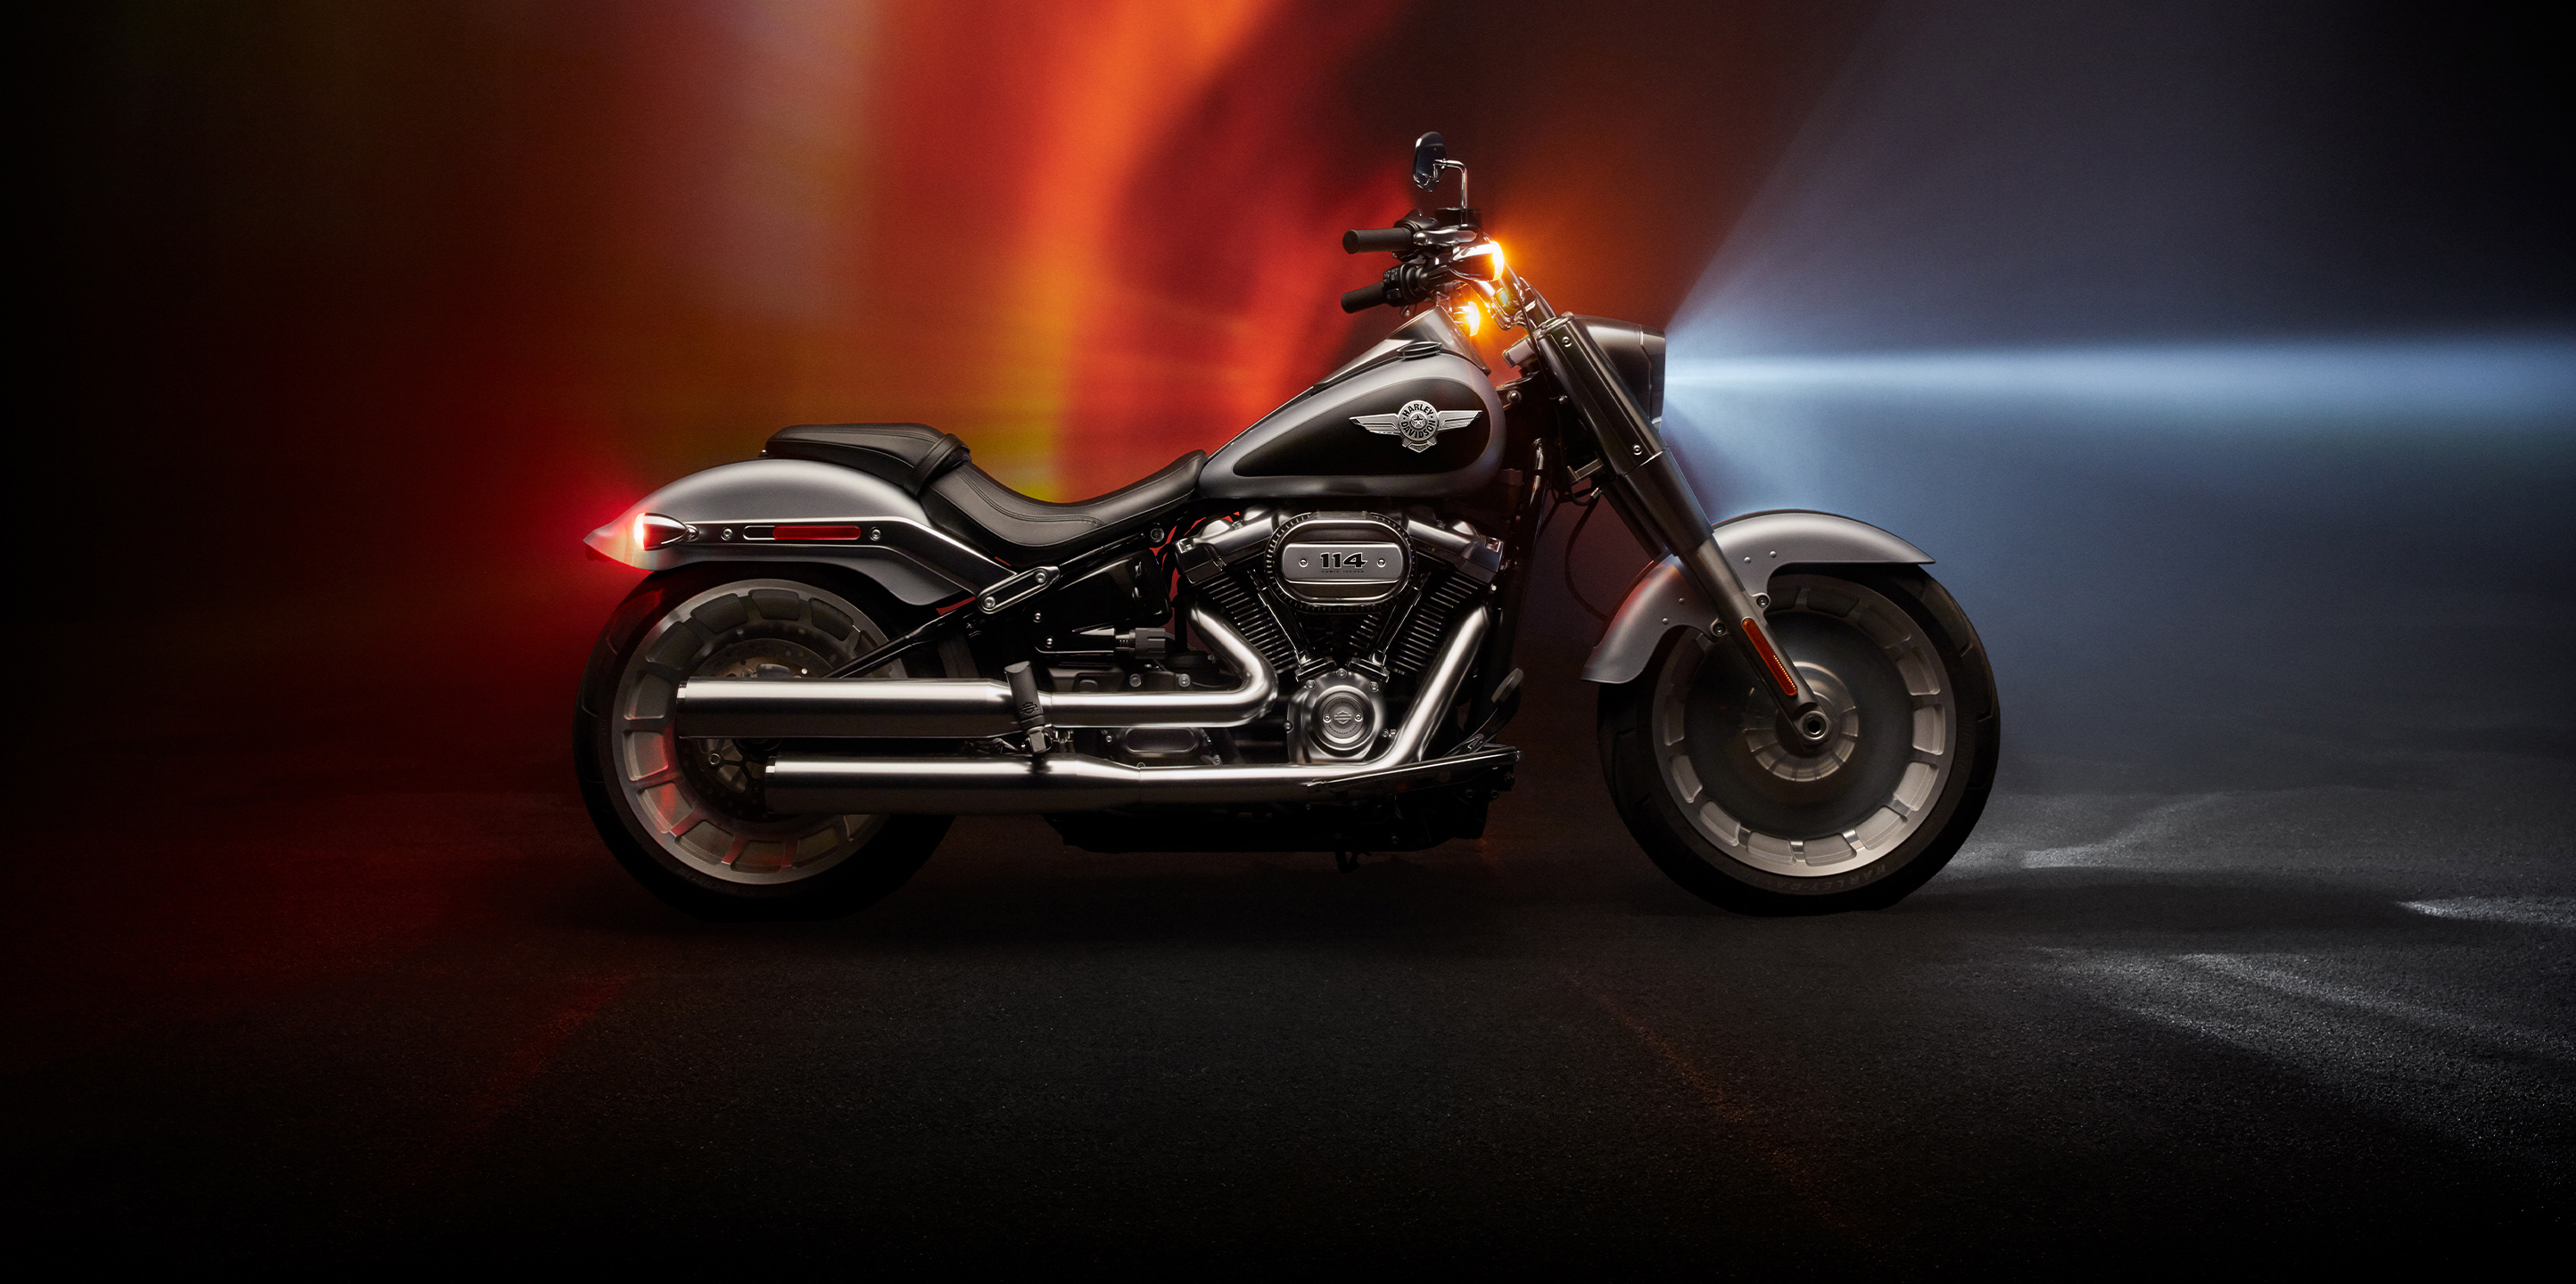 2020 Harley Davidson Color Chart